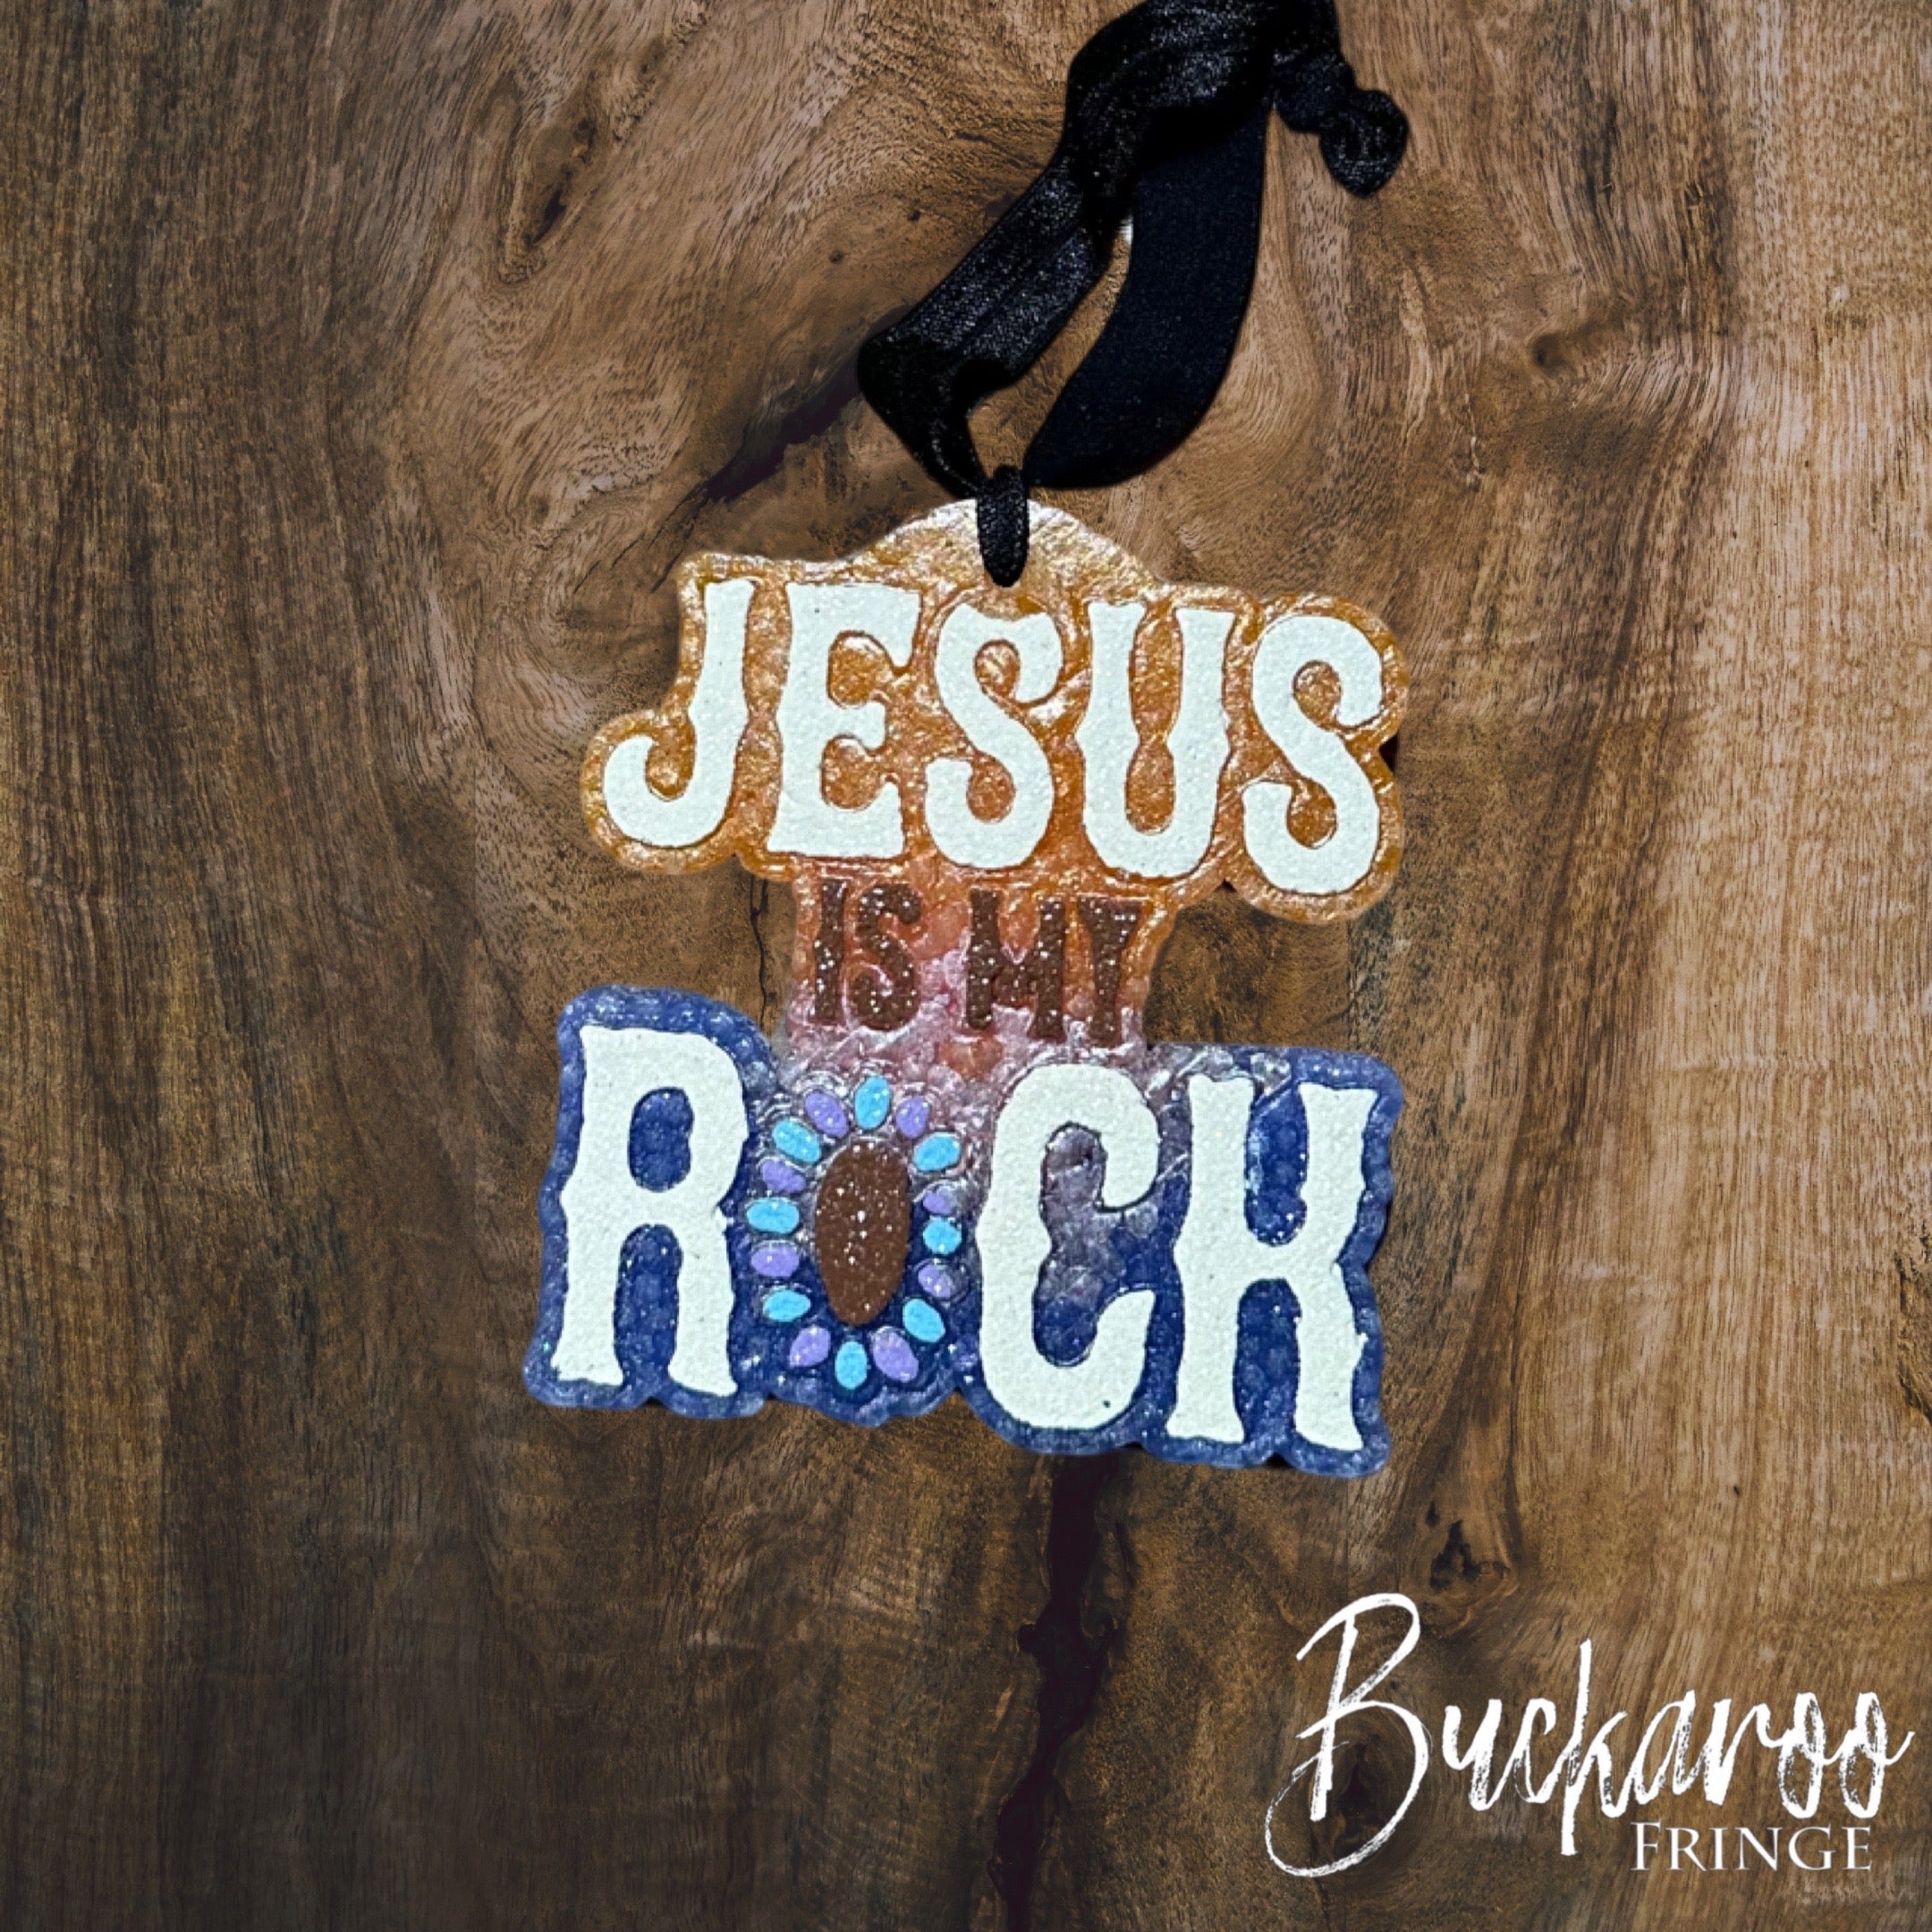 Jesus Is My Rock